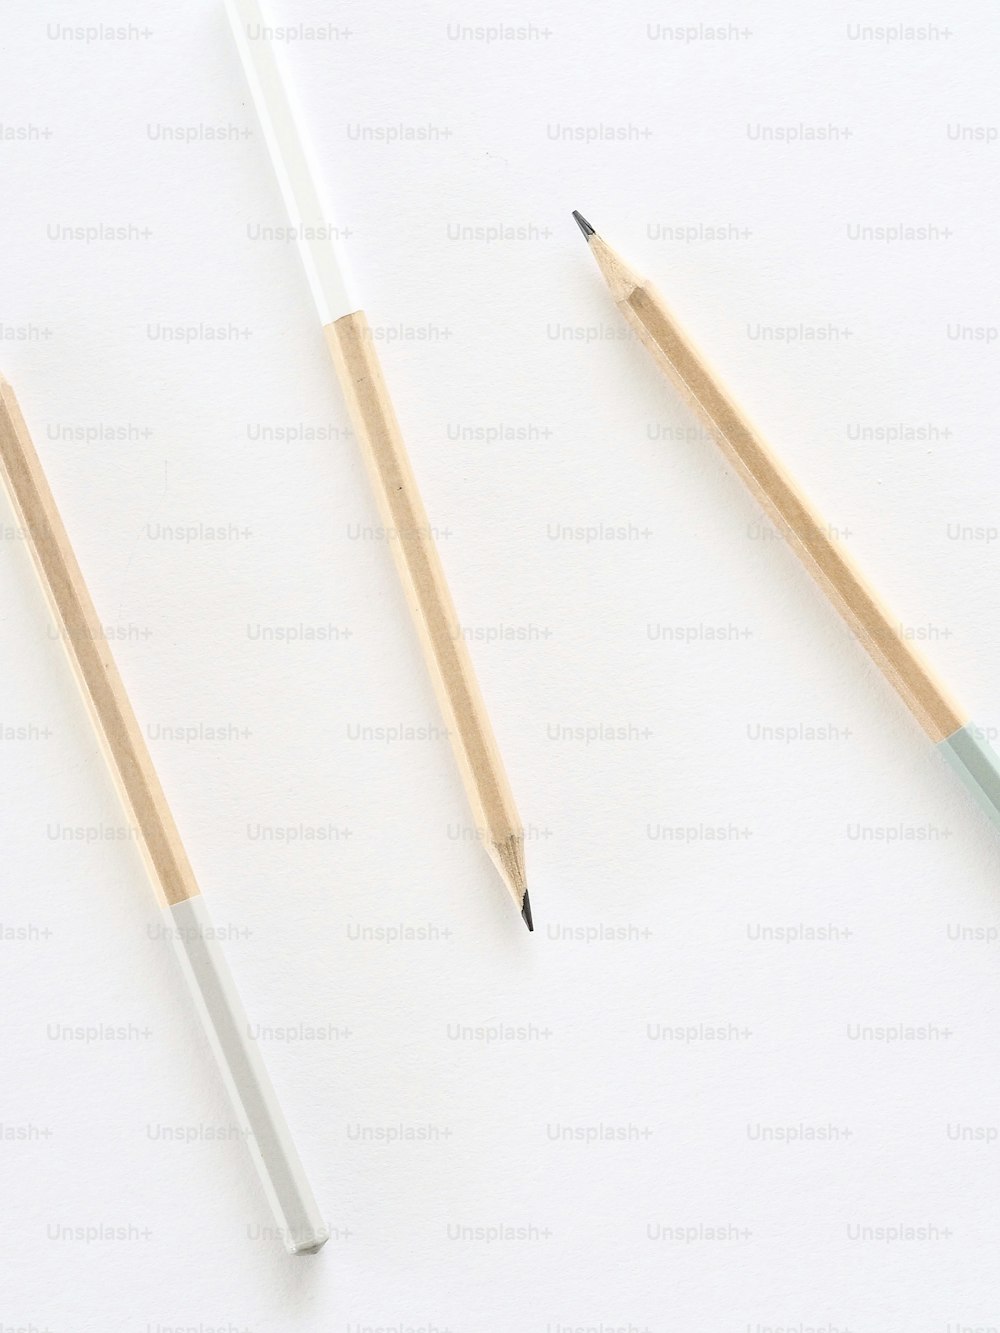 흰색 표면에 연필 두 개와 연필깎이